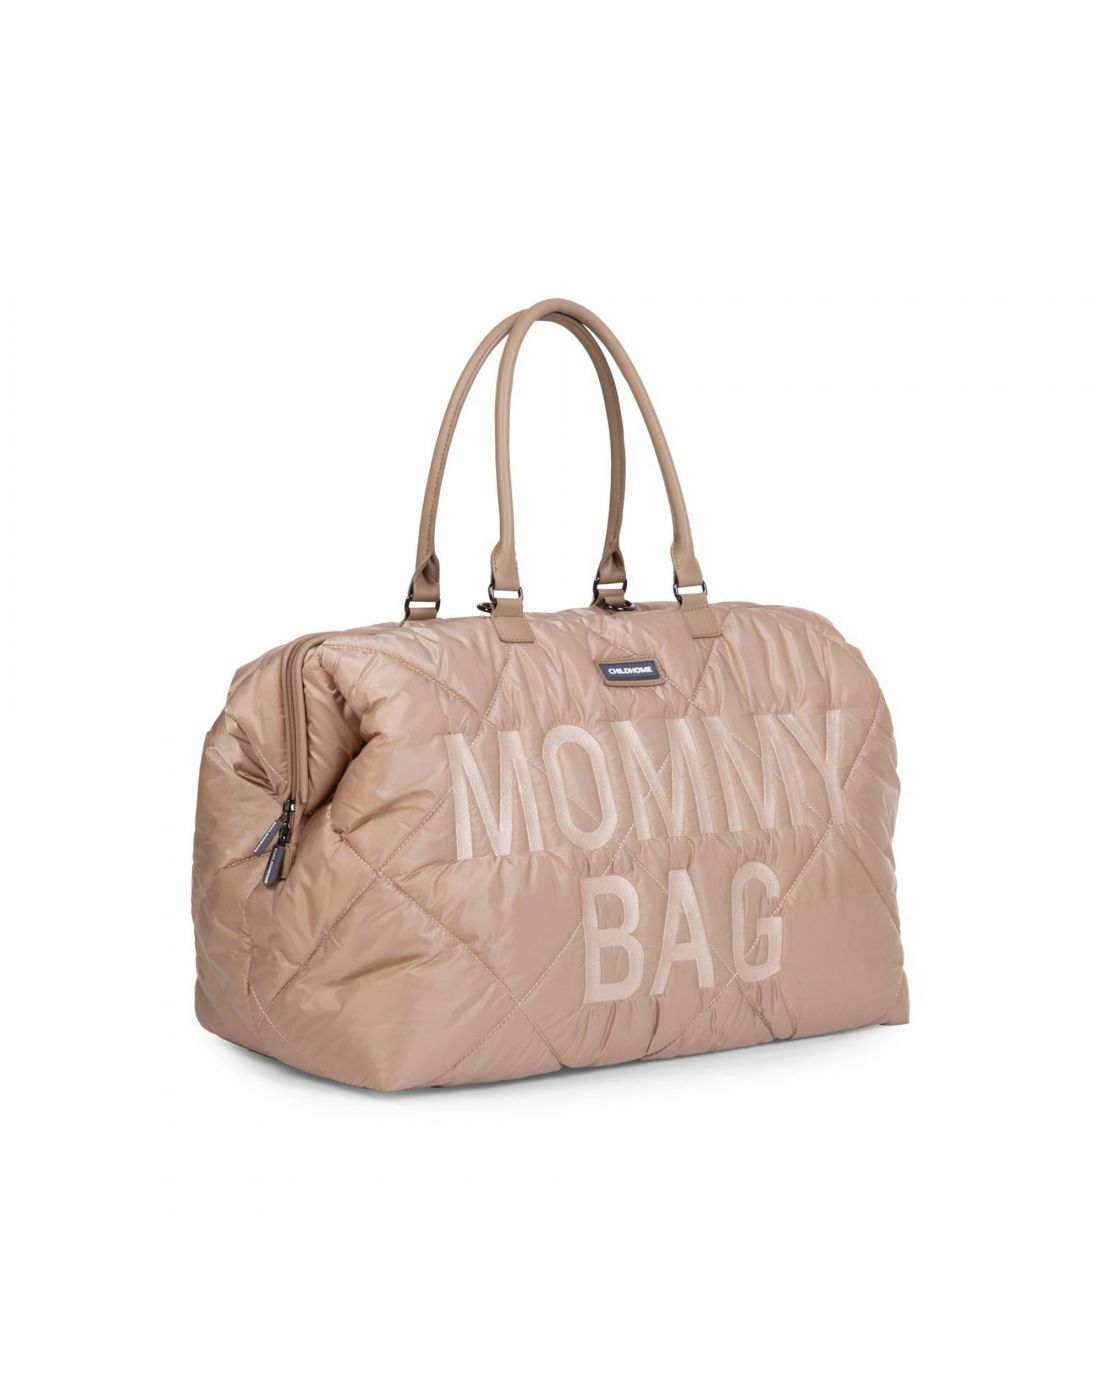 Τσάντα αλλαγής Childhome Mommy Bag Puffered Beige